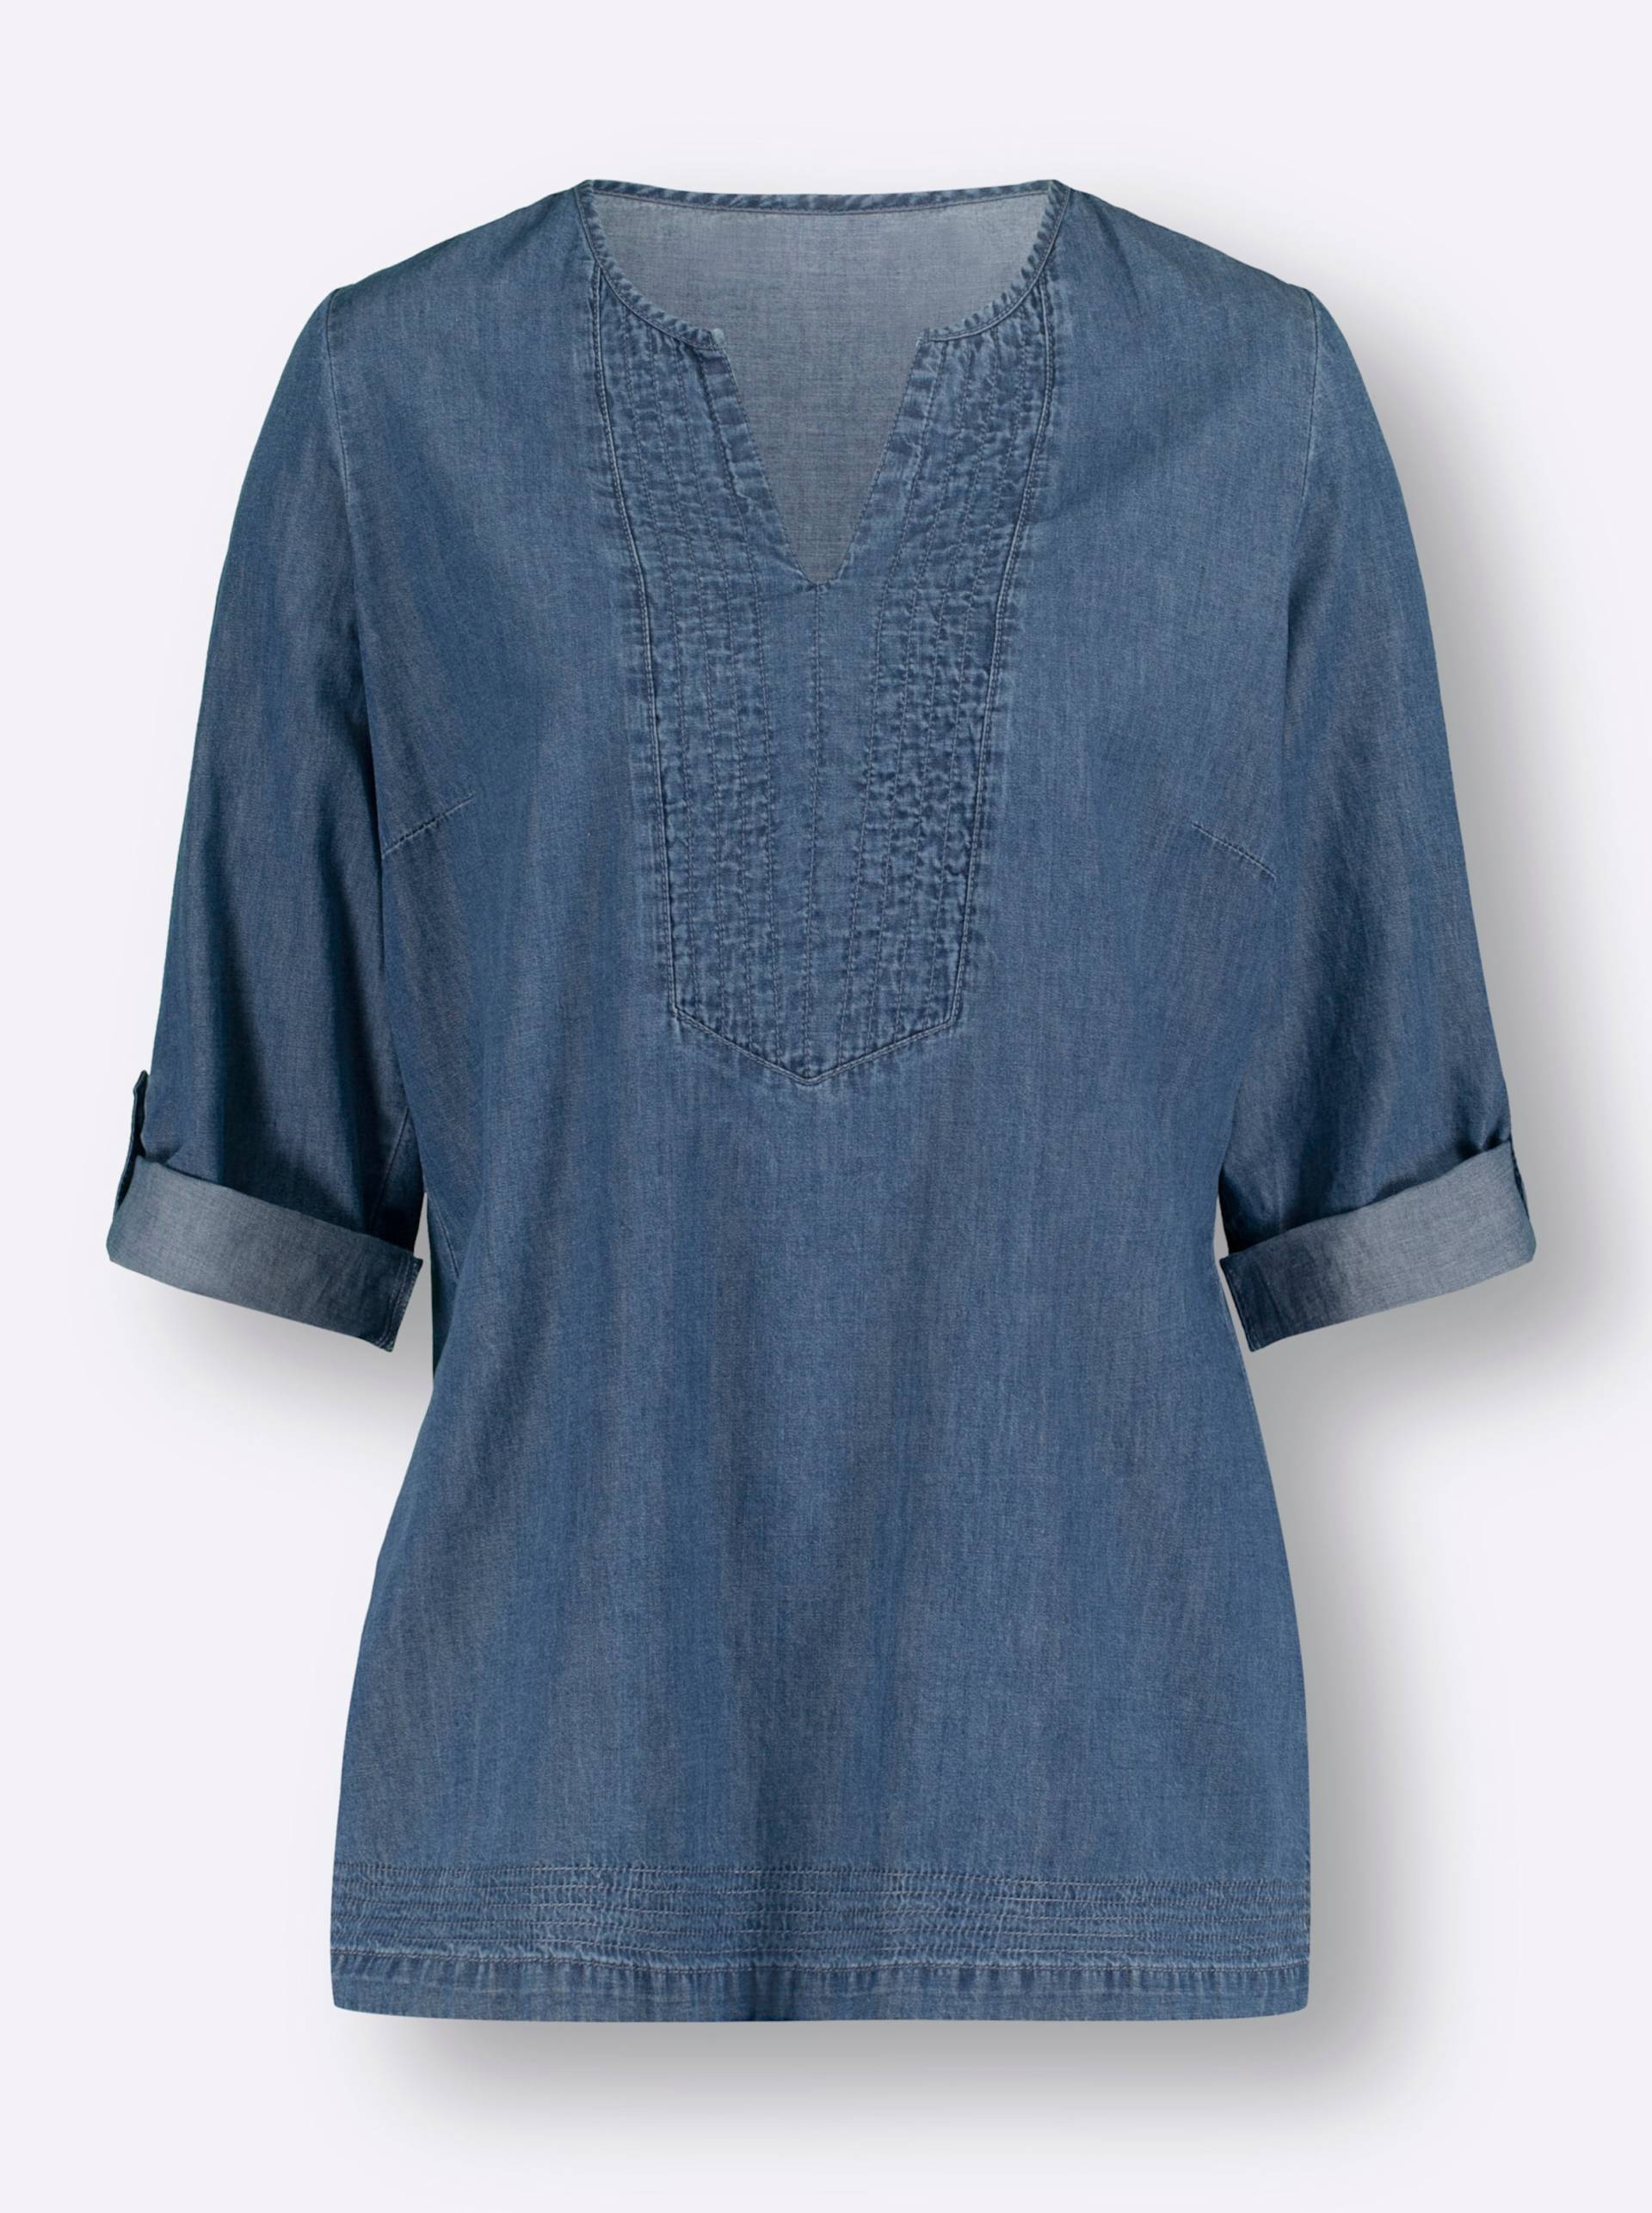 Jeans-Tunika in blue-stone-washed von heine